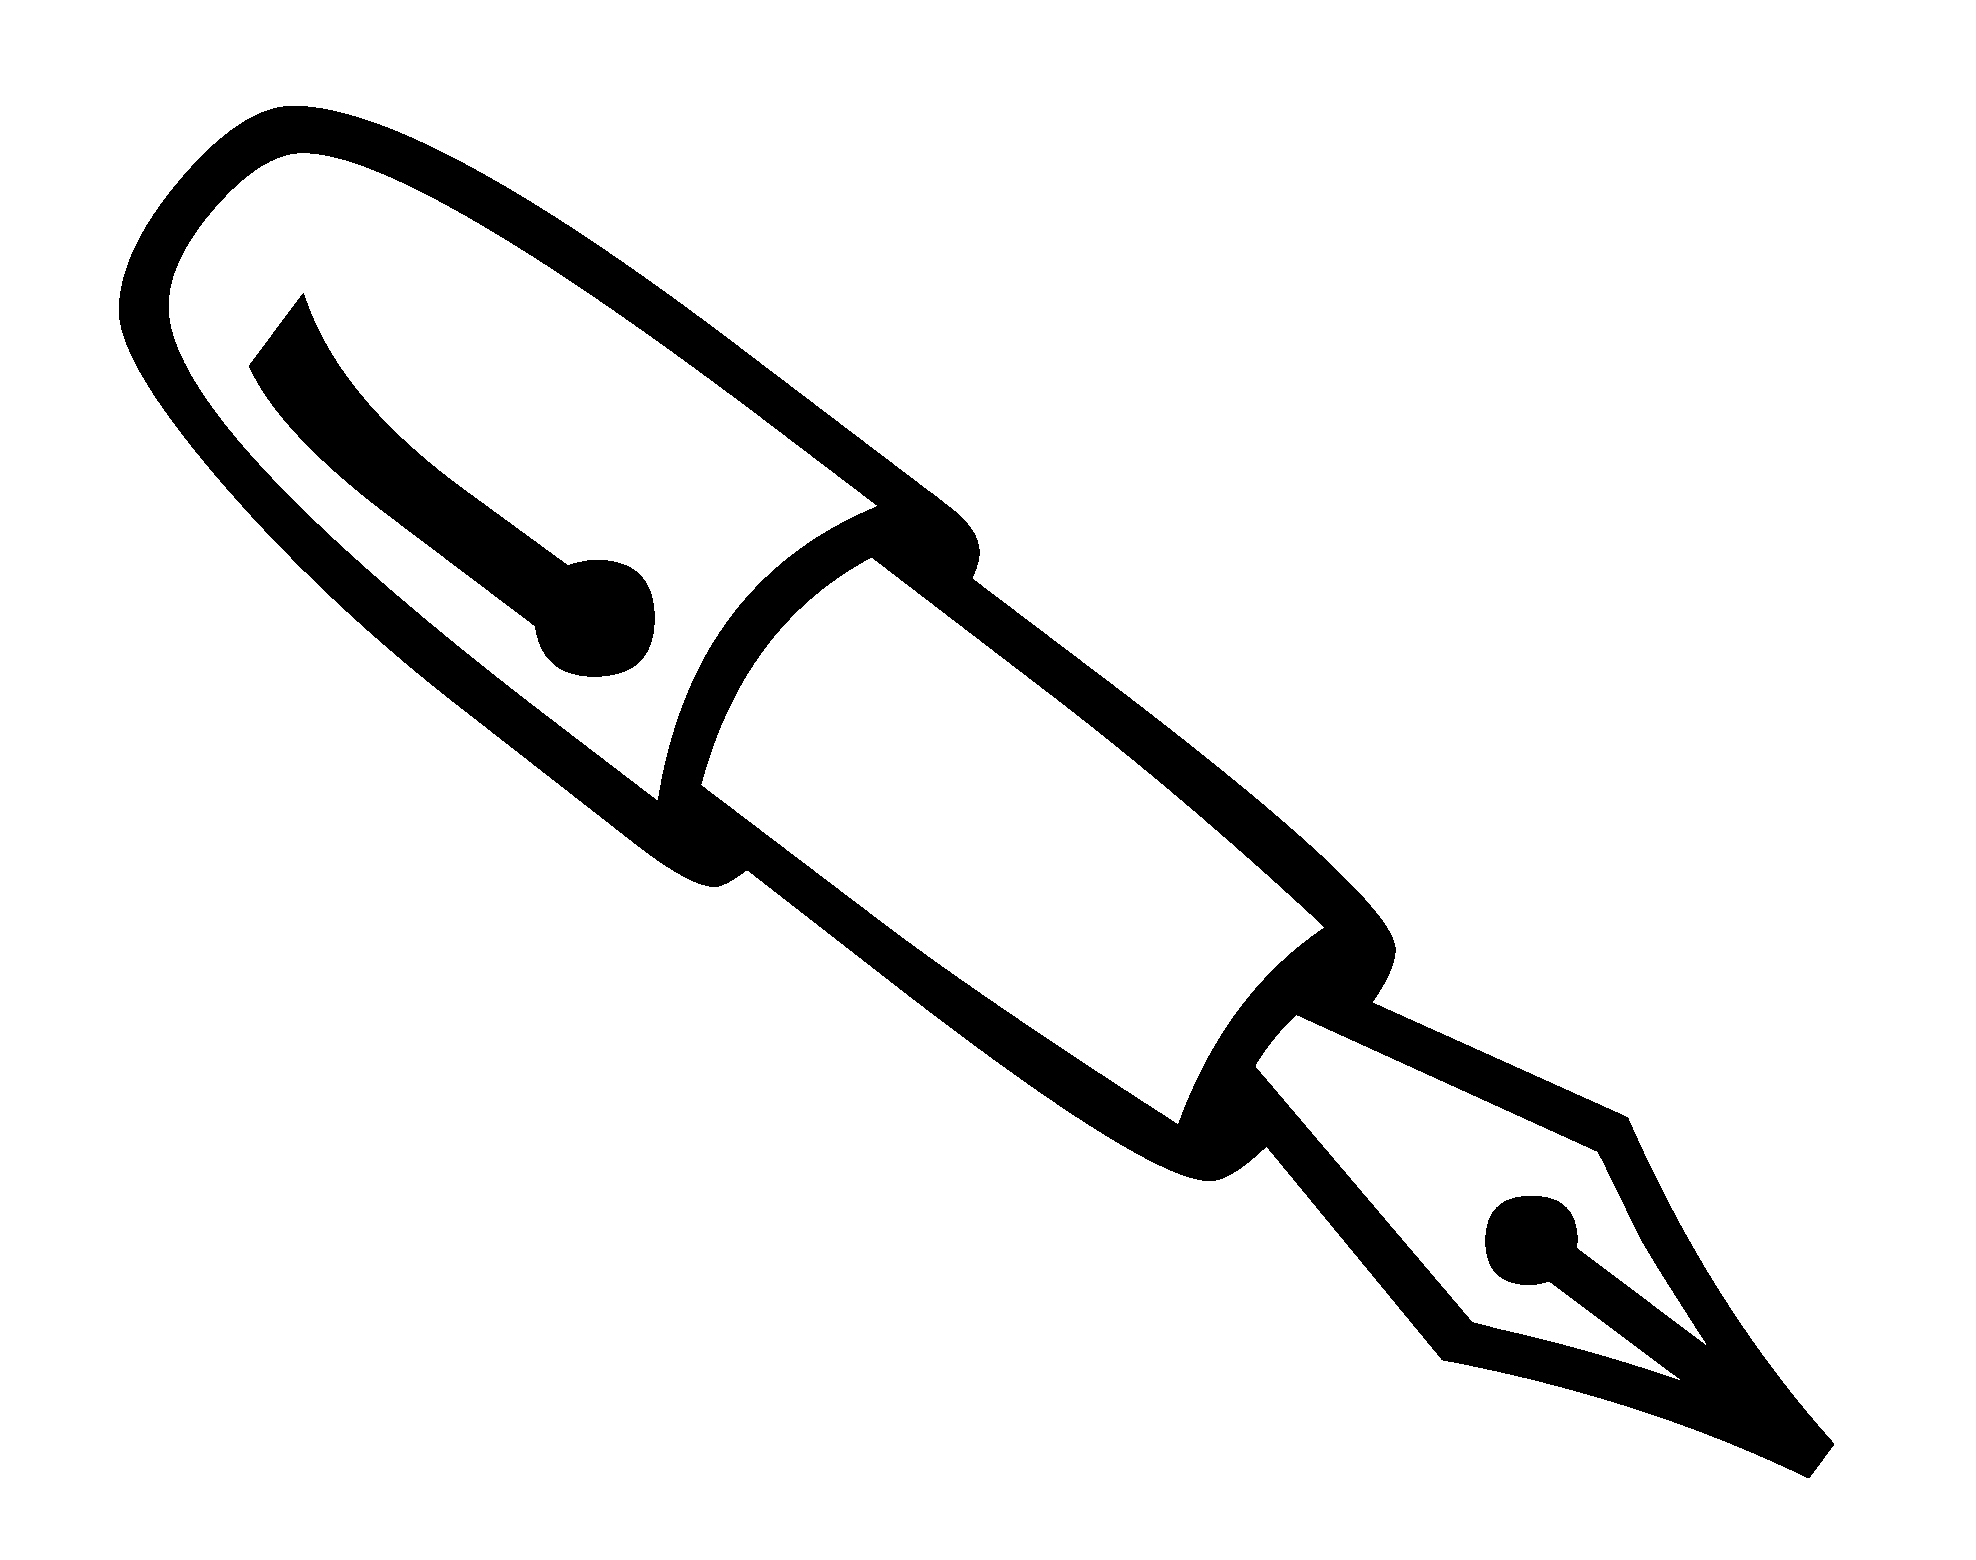 Pen logo symbol clipart